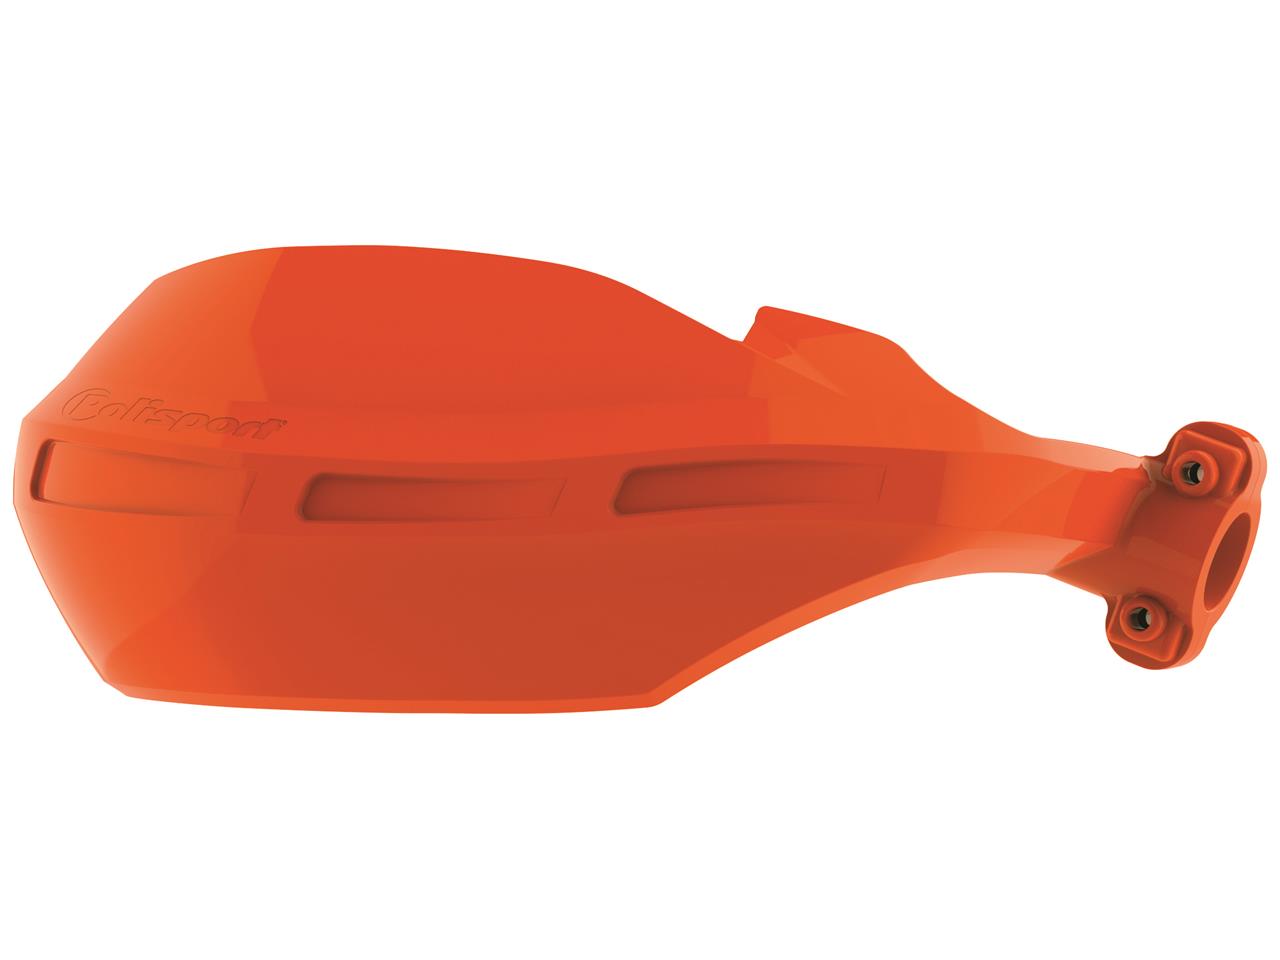 Protège-mains marque Polisport Nomad couleur orange